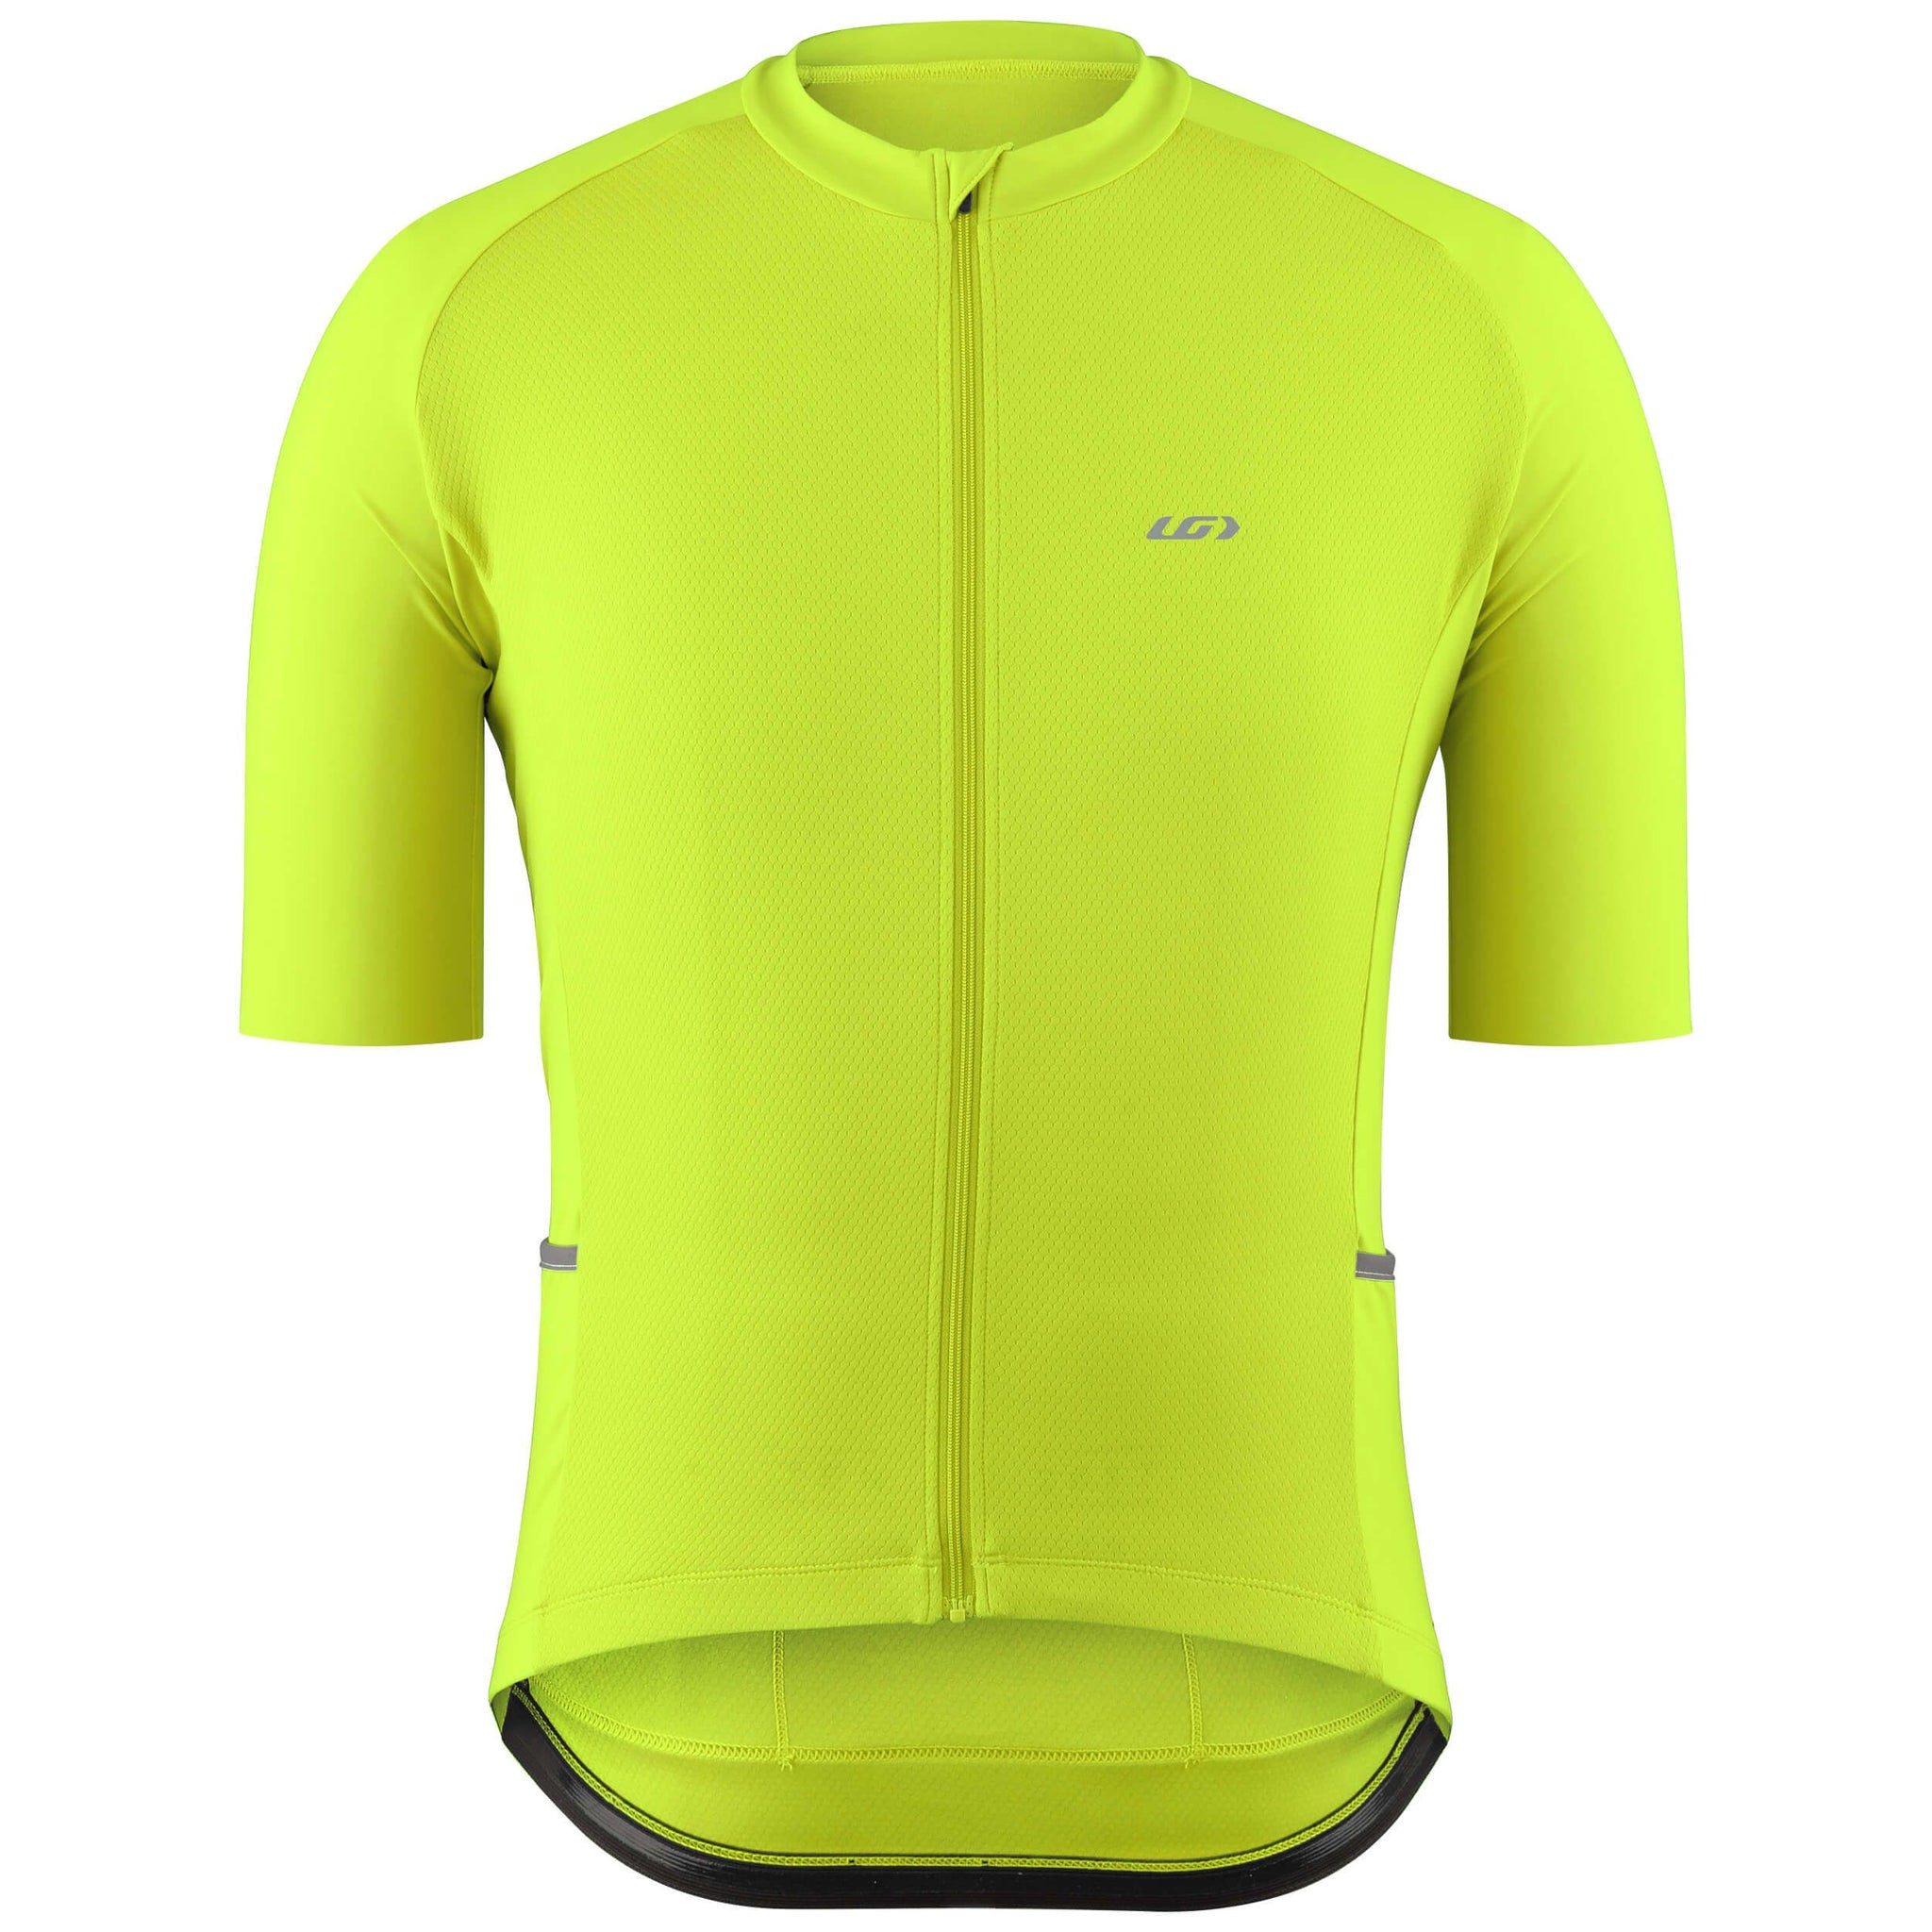 Louis Garneau Cycling Jersey: Cool Long/Short Sleeve Bike/Bicycle